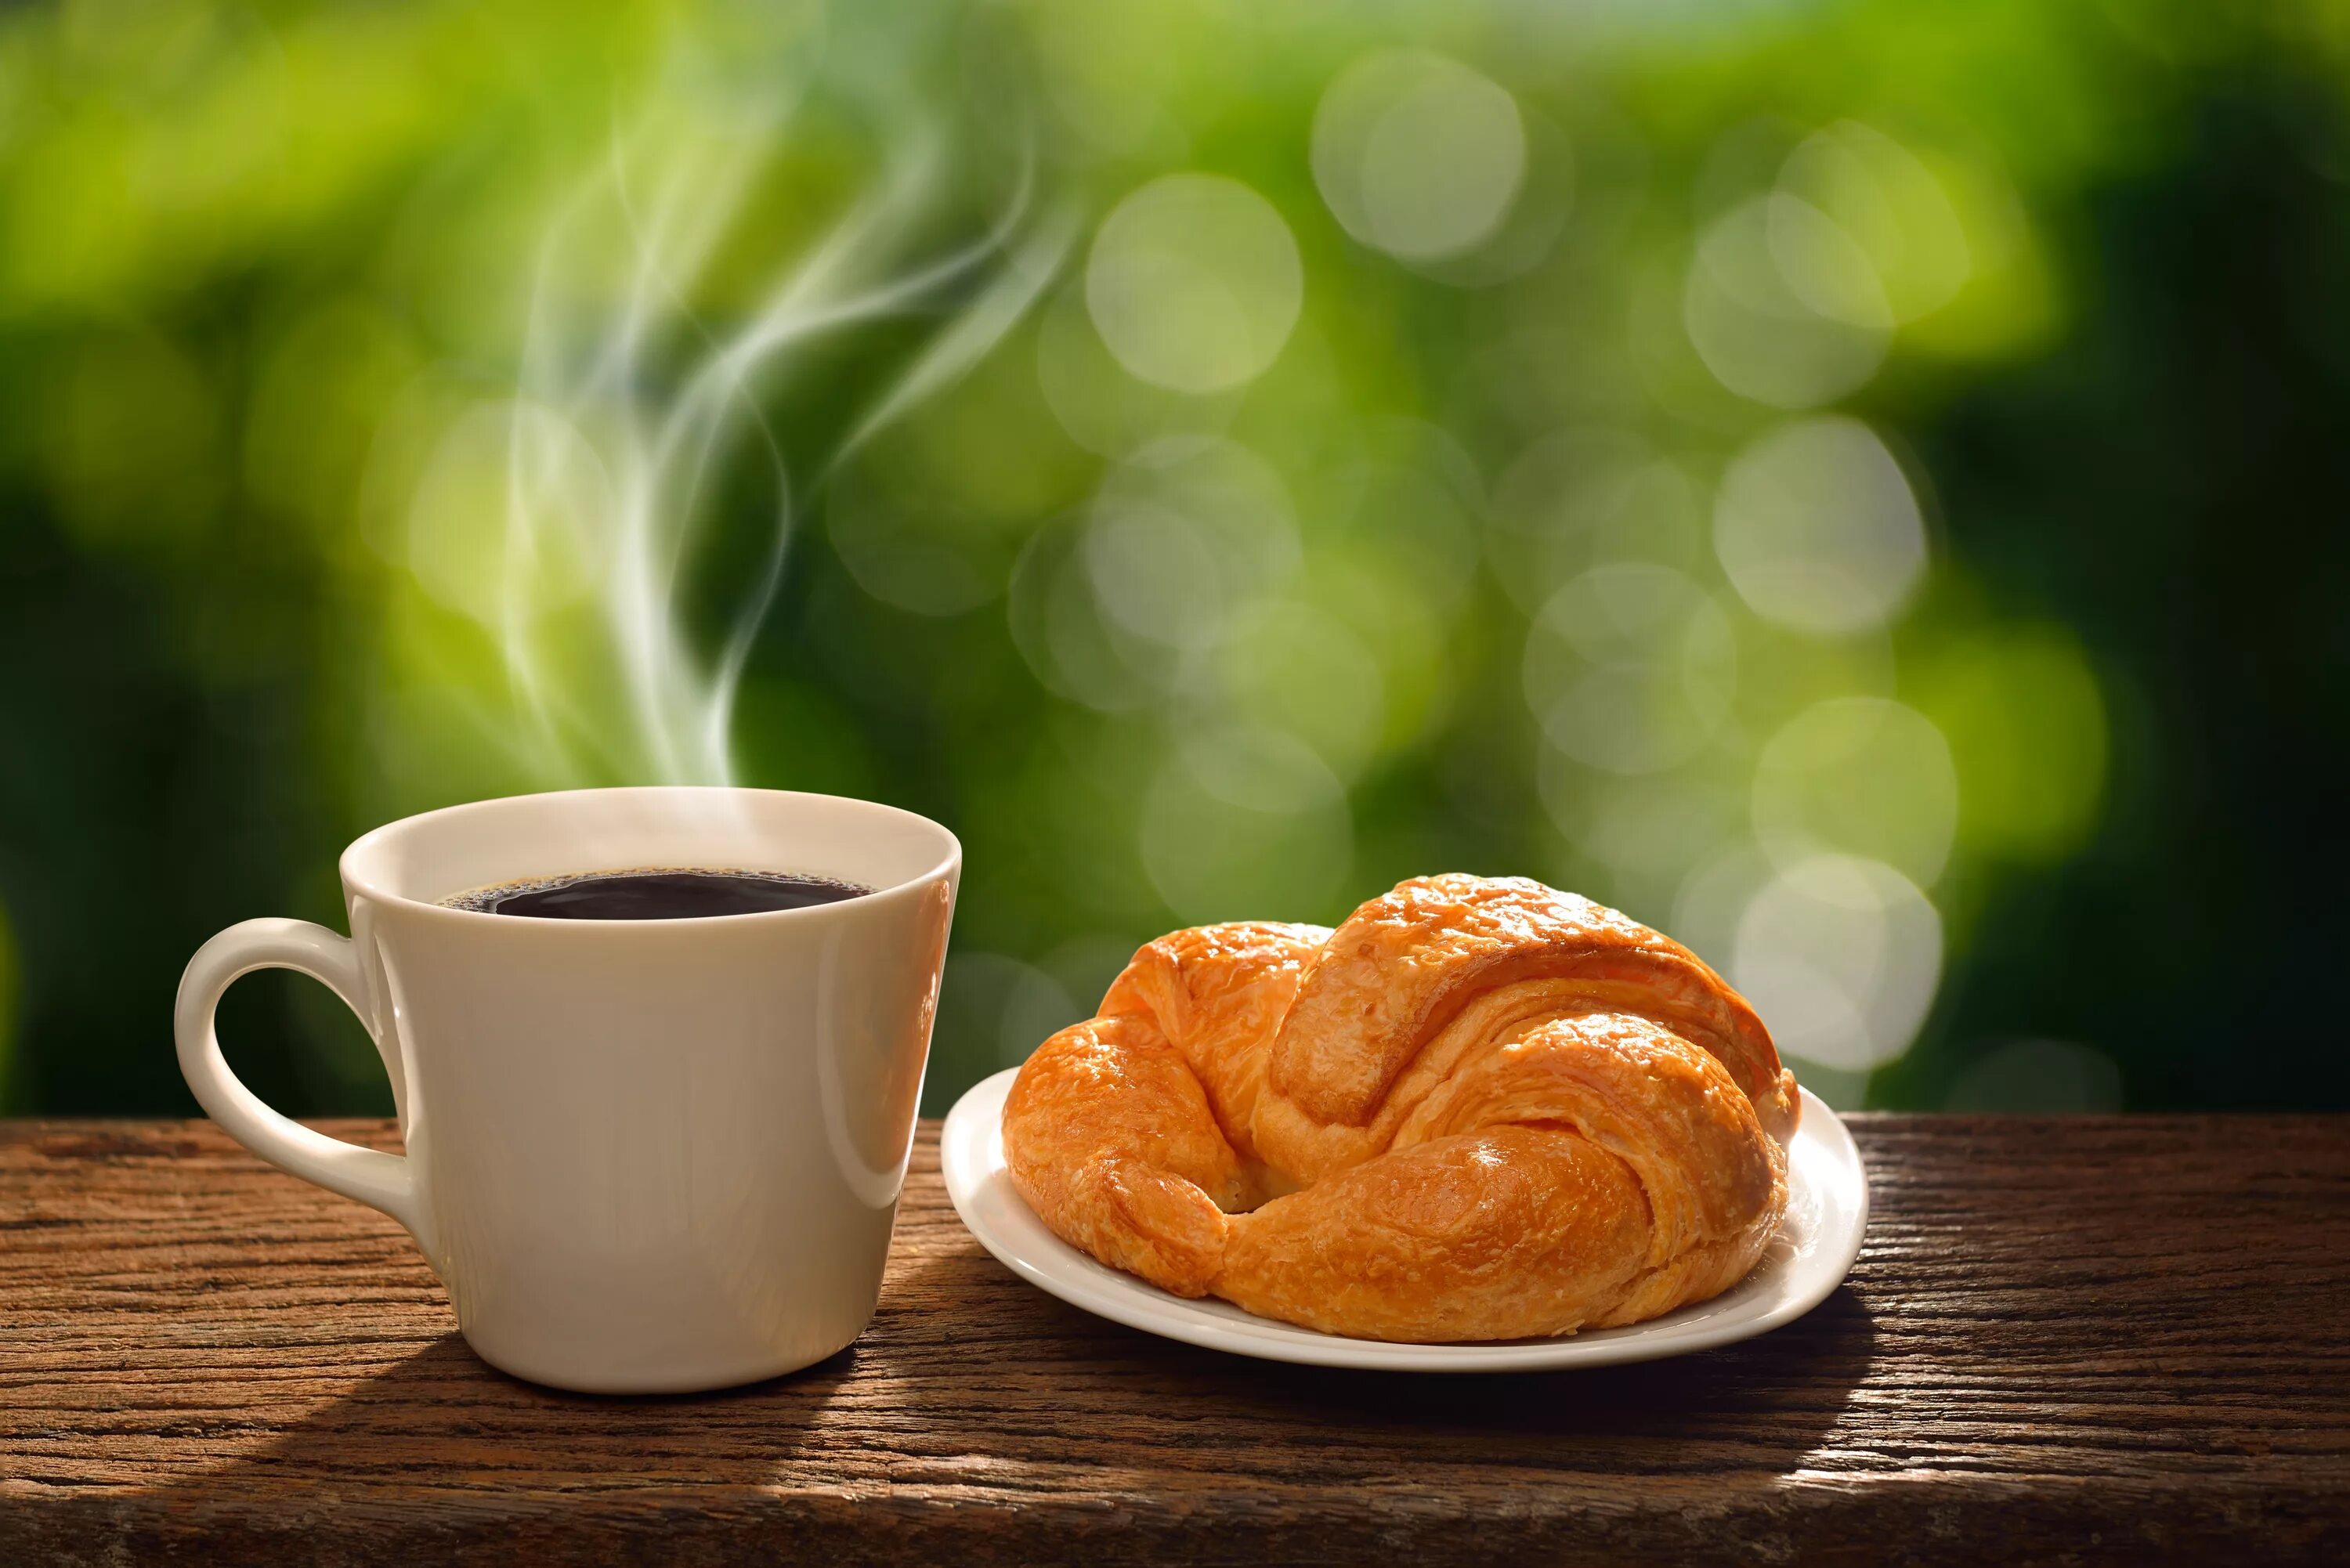 Утро называться. Утренний кофе. Чашка утреннего кофе. Кофе с булочкой. Кофе и круассан.